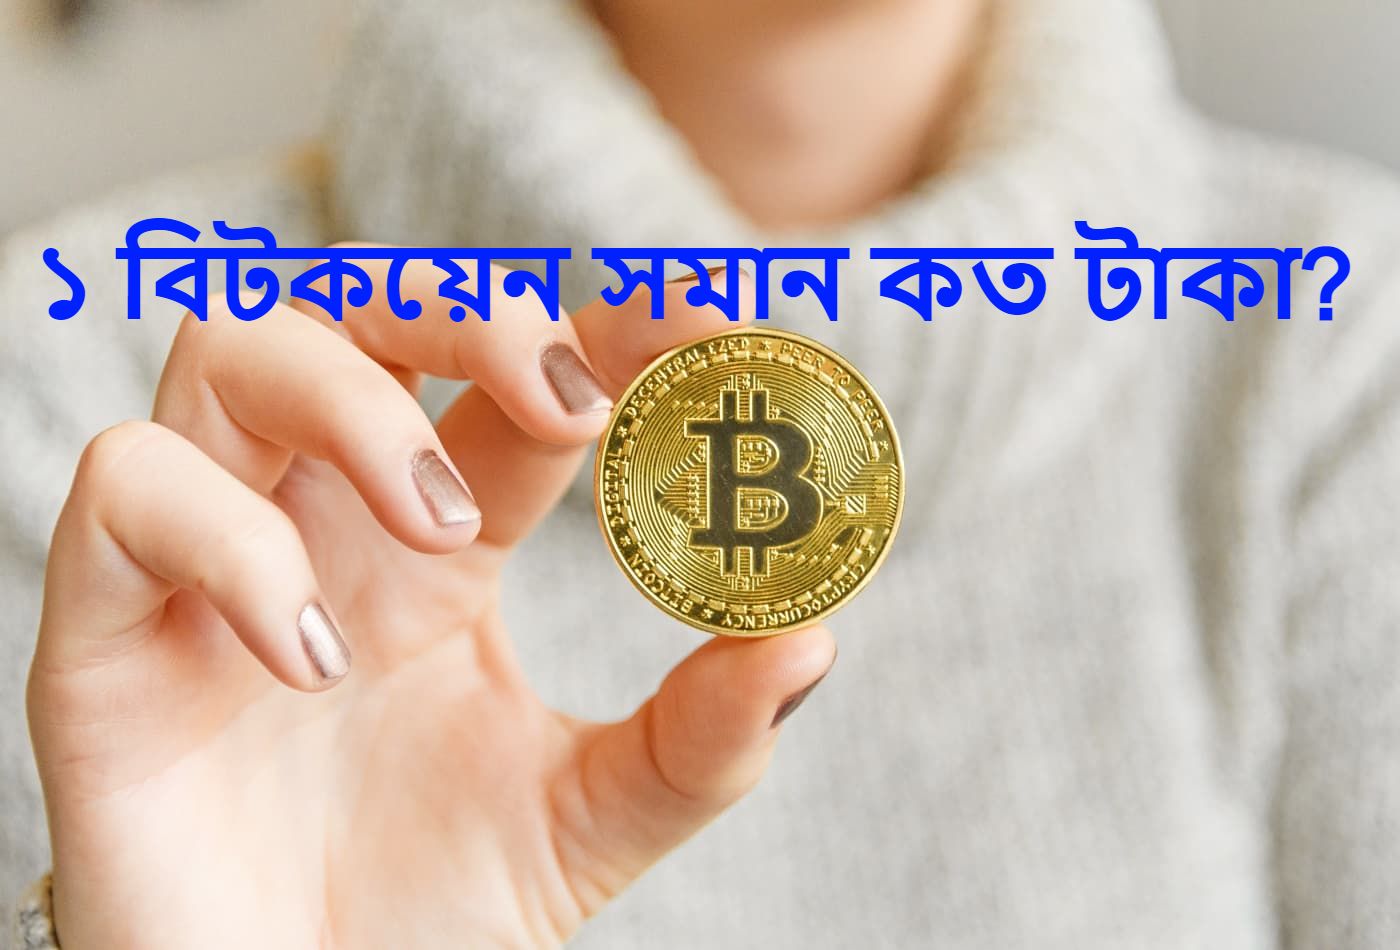 1 BTC to BDT or 1 Bitcoin to Bangladeshi Taka